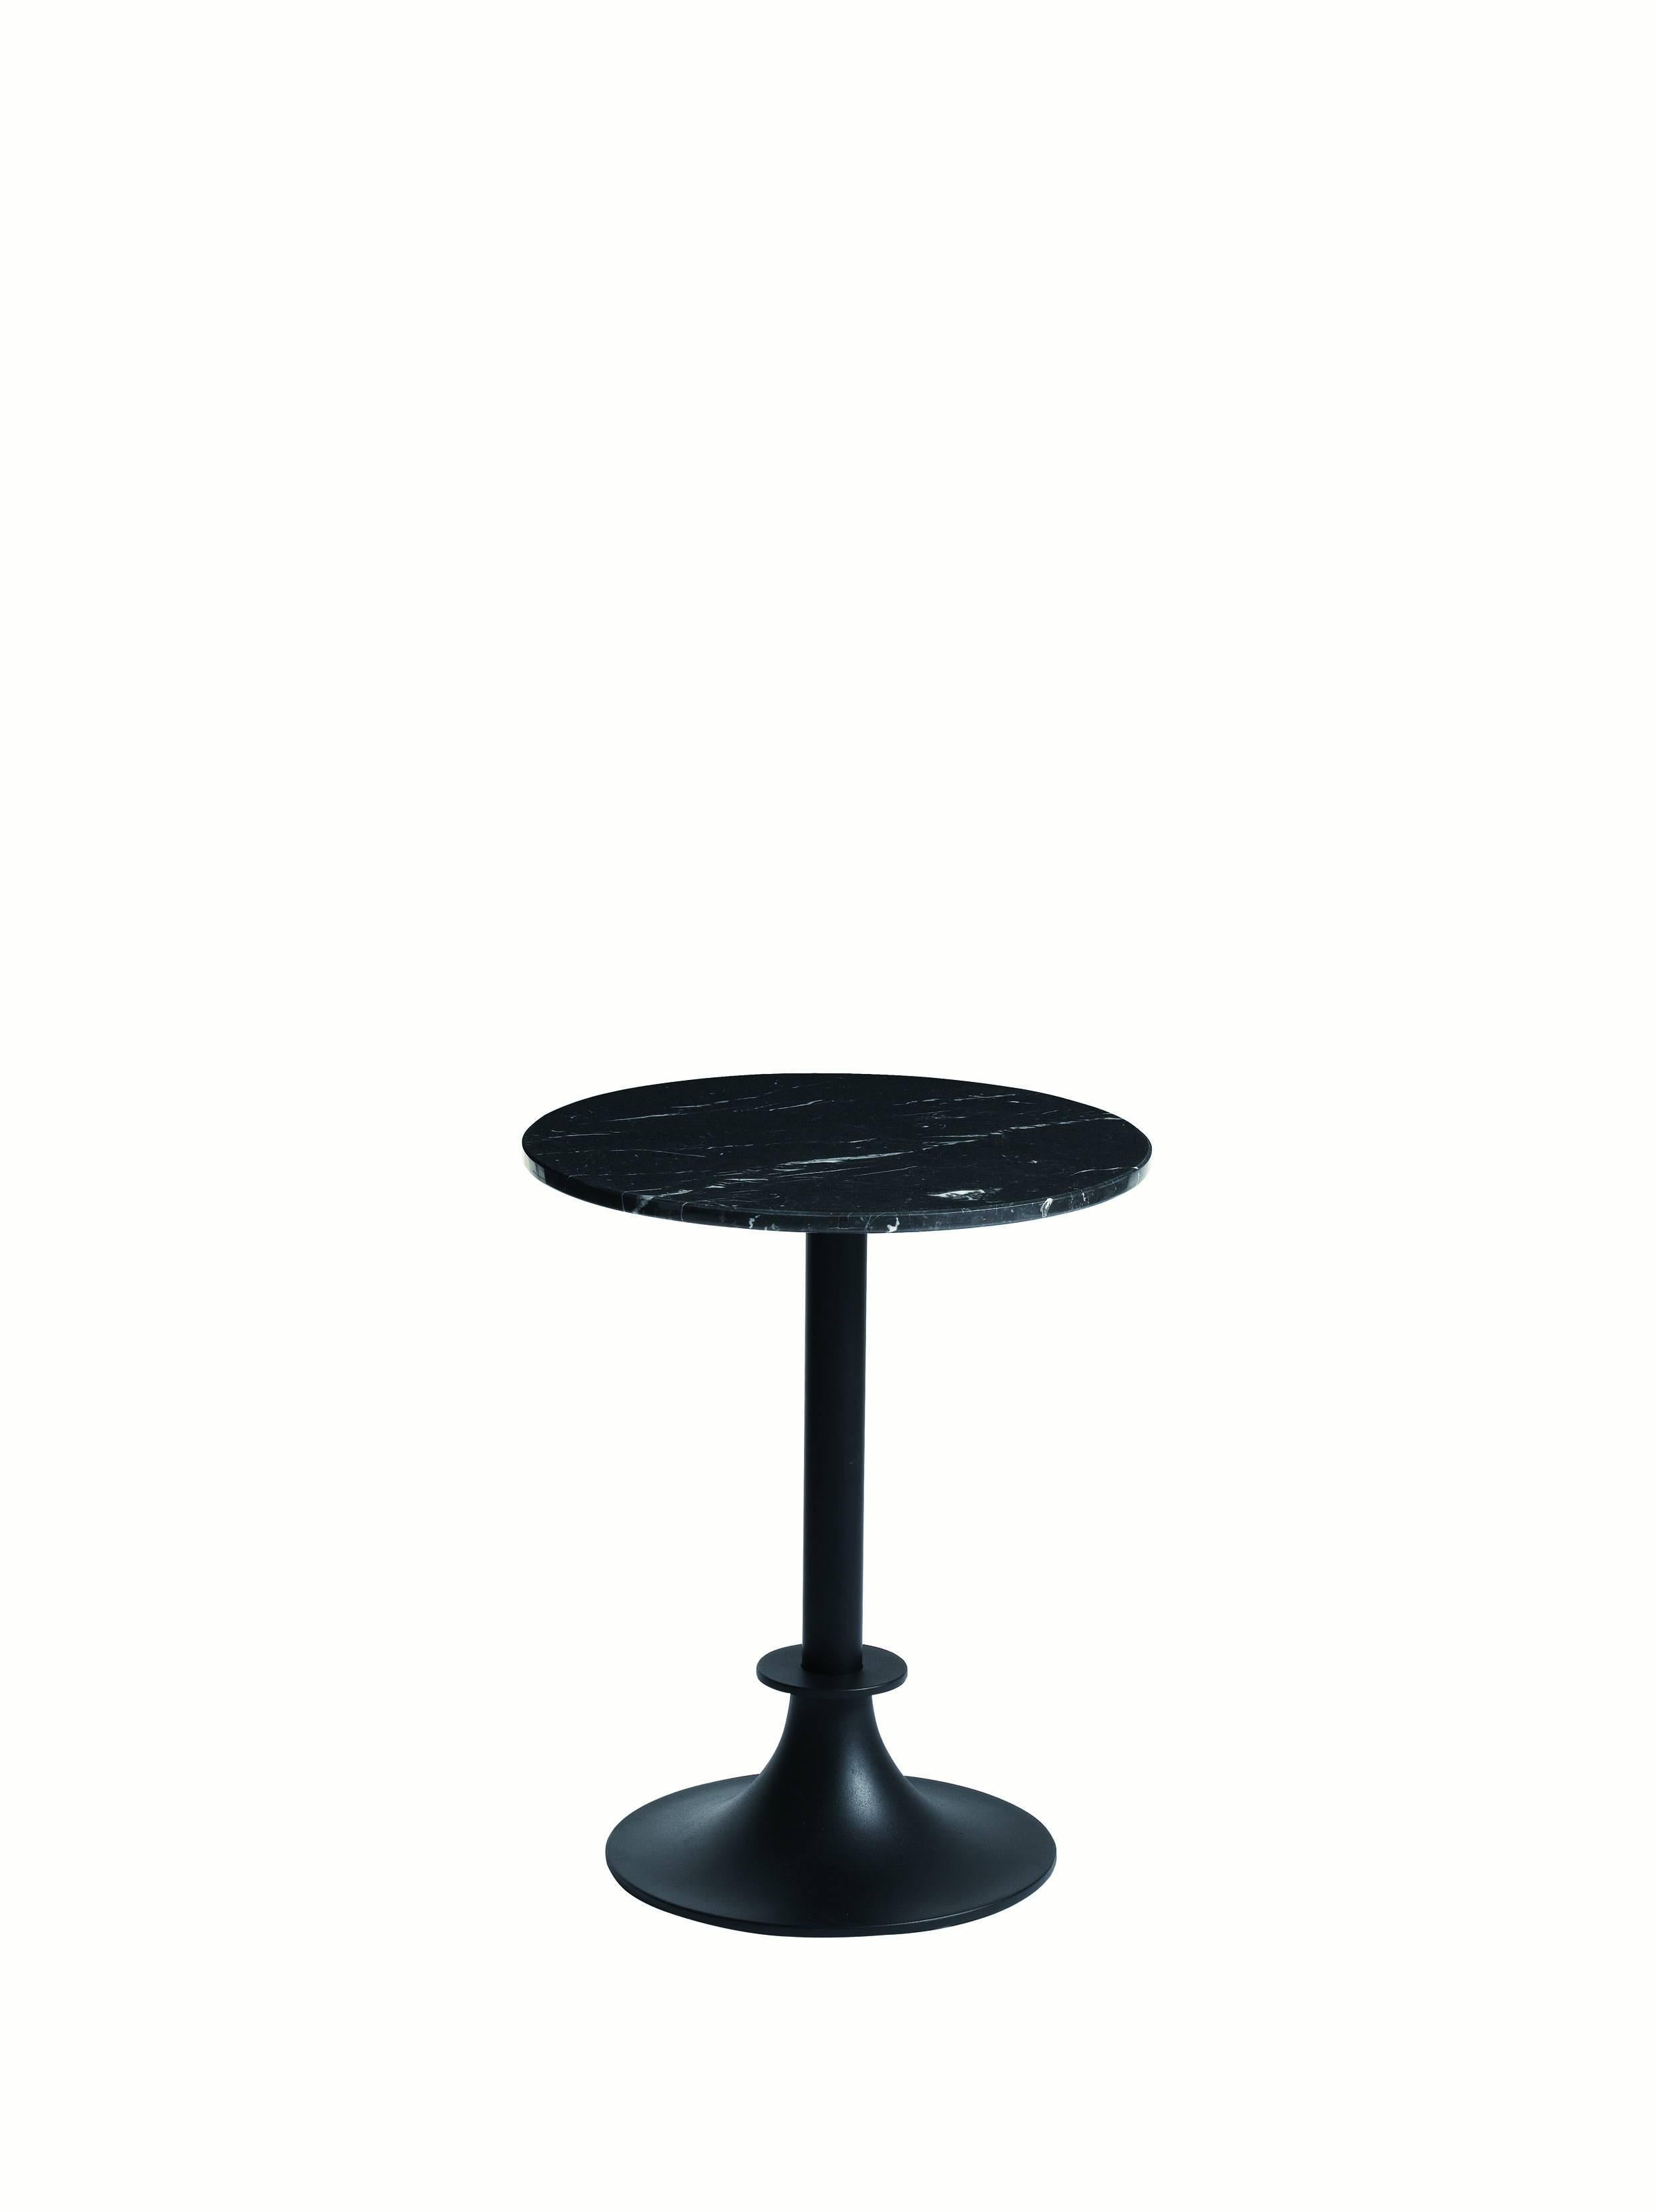 LORD YI-Tische von Philippe Starck für Driade

Fuß und Säule aus grau oder schwarz anthrazit lackiertem Aluminium mit runder oder rechteckiger Platte.

Platte aus weißem Kalkutta-Carrara-Marmor oder schwarzem Marquina-Marmor für den Innen- und